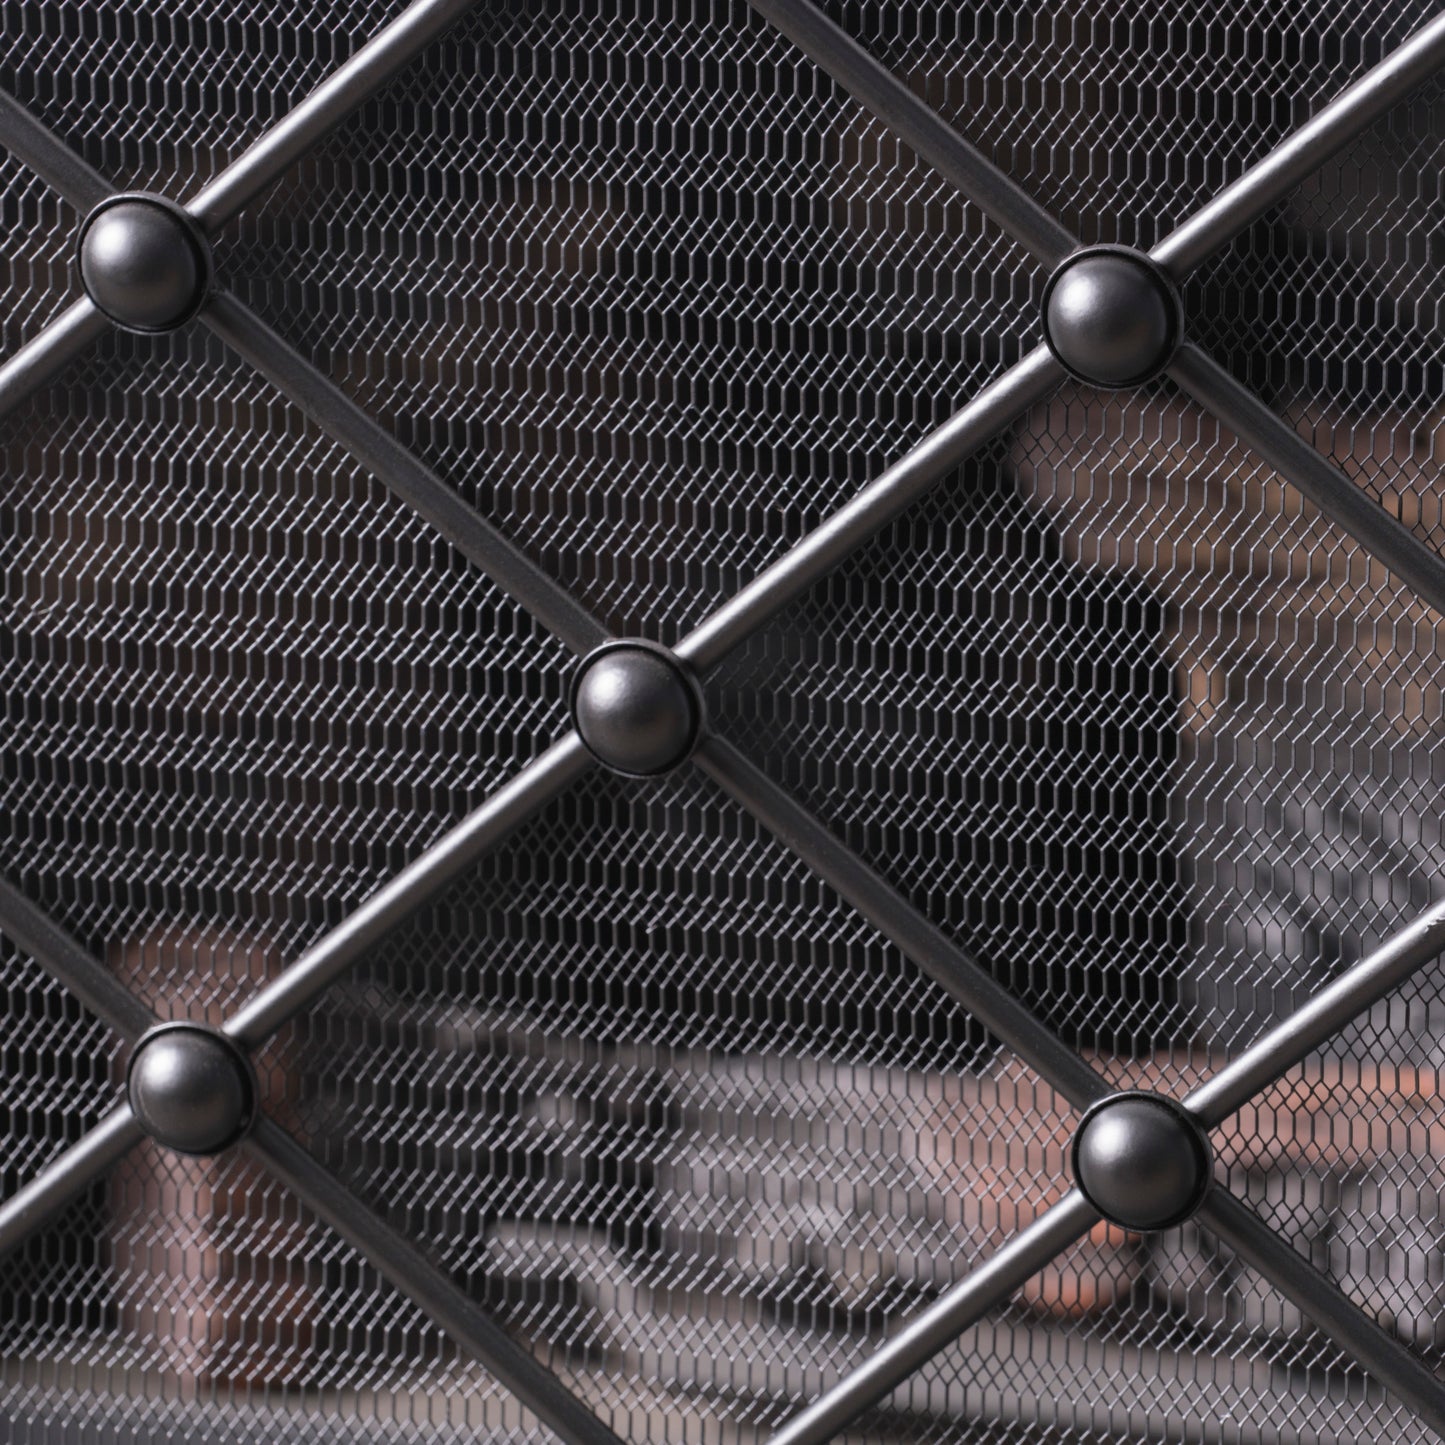 Chamberlain Modern 3-Panel Diamond Pattern Iron Fireplace Screen